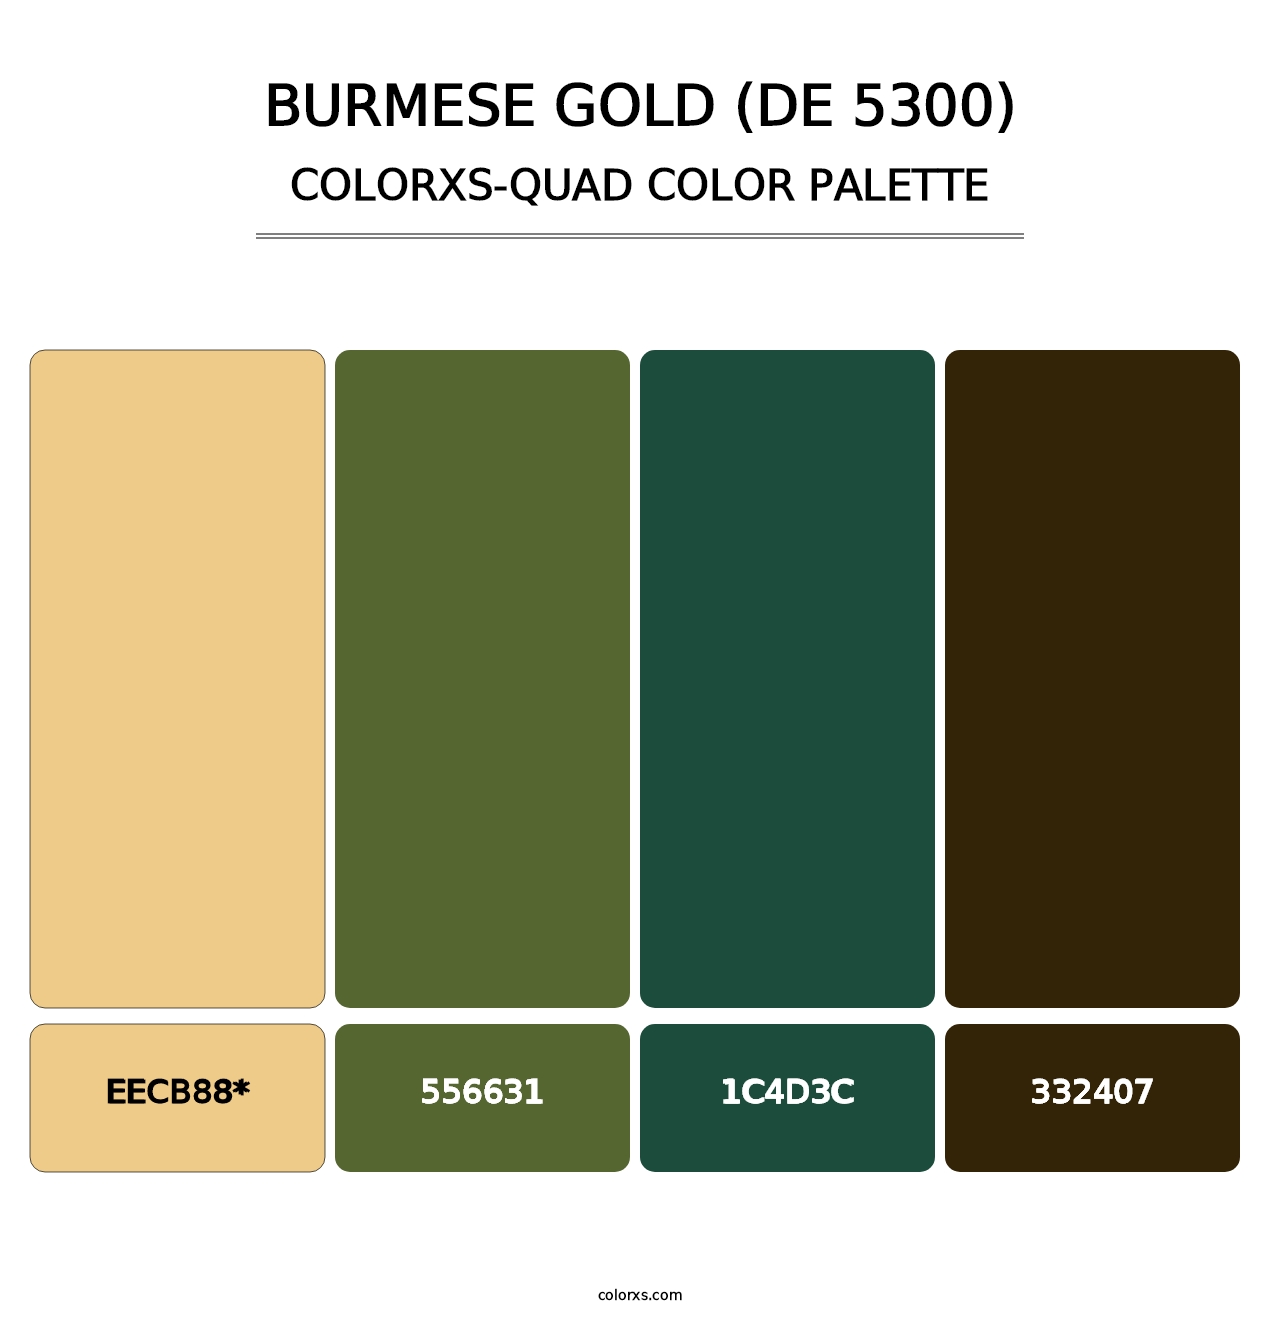 Burmese Gold (DE 5300) - Colorxs Quad Palette